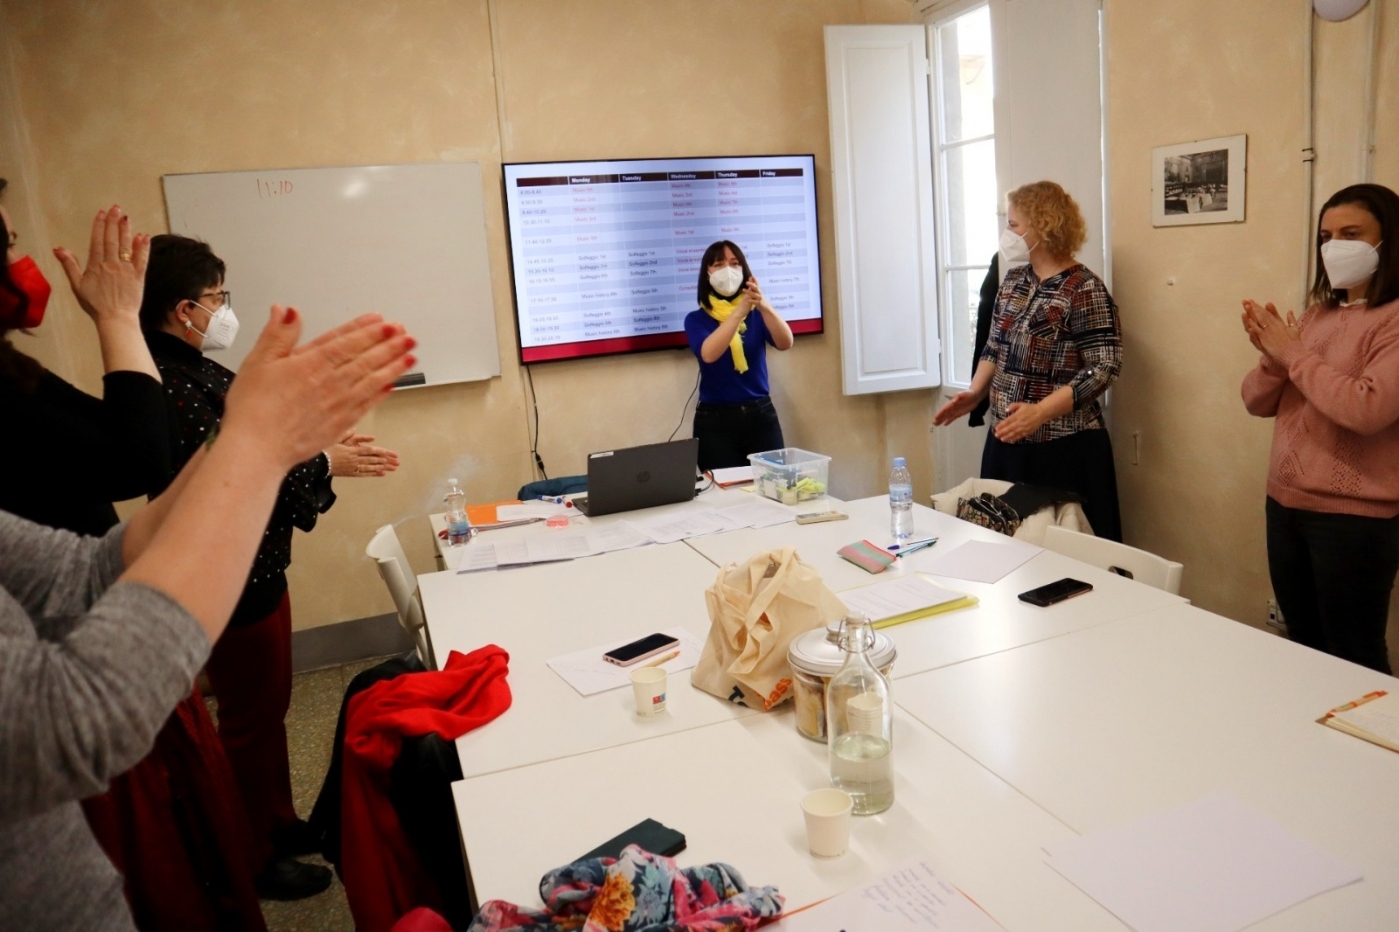 Jelgavas novada izglītības iestāžu pedagogi apgūst jaunas zināšanas ārvalstīs